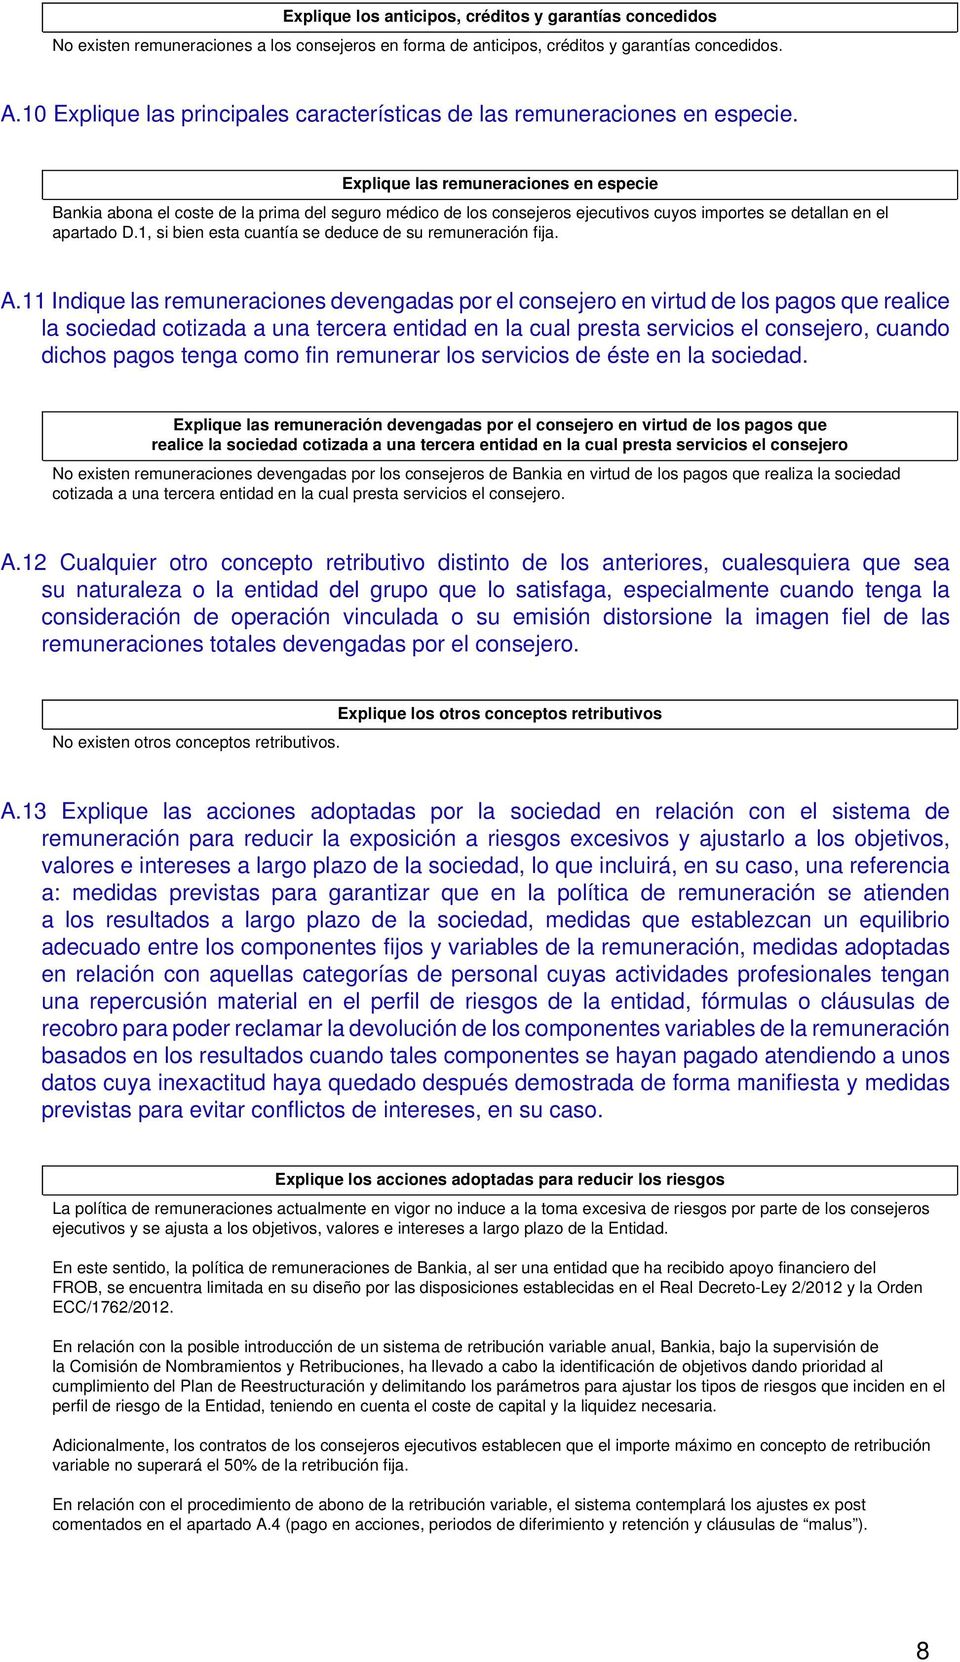 Explique las remuneraciones en especie Bankia abona el coste de la prima del seguro médico de los consejeros ejecutivos cuyos importes se detallan en el apartado D.